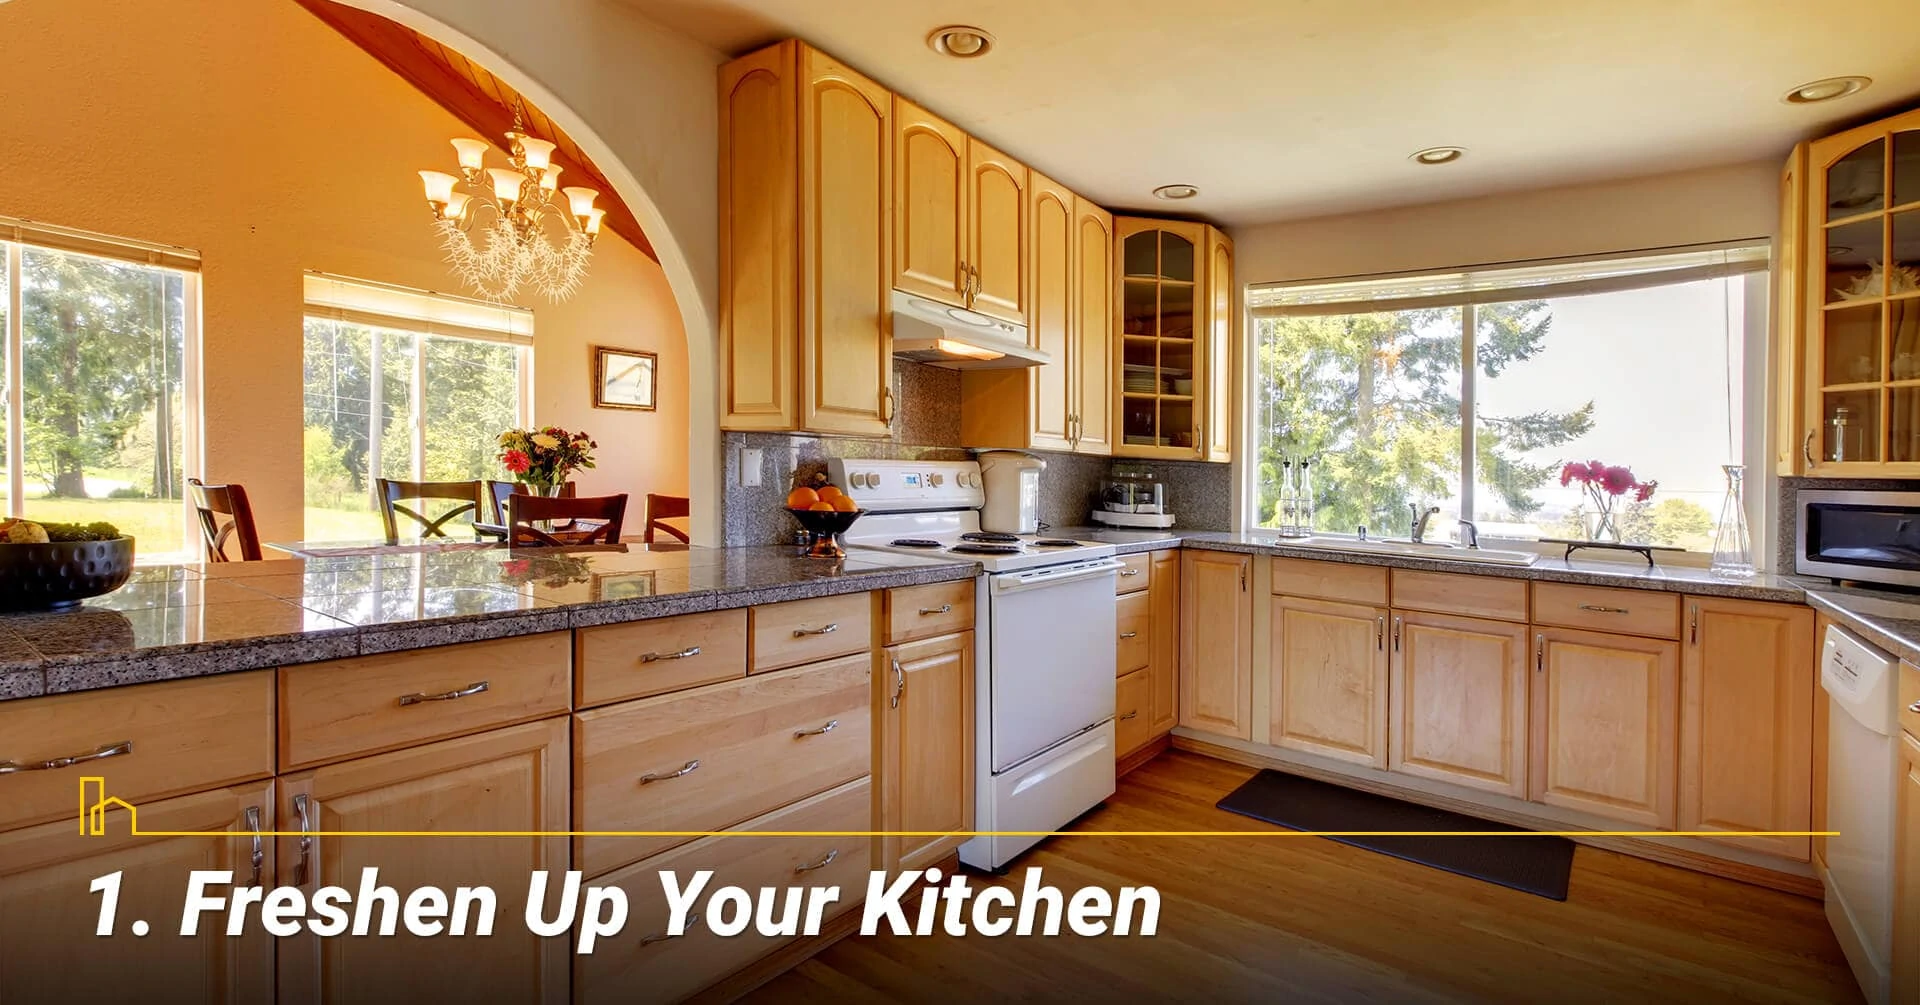 Freshen Up Your Kitchen, upgrade your kitchen